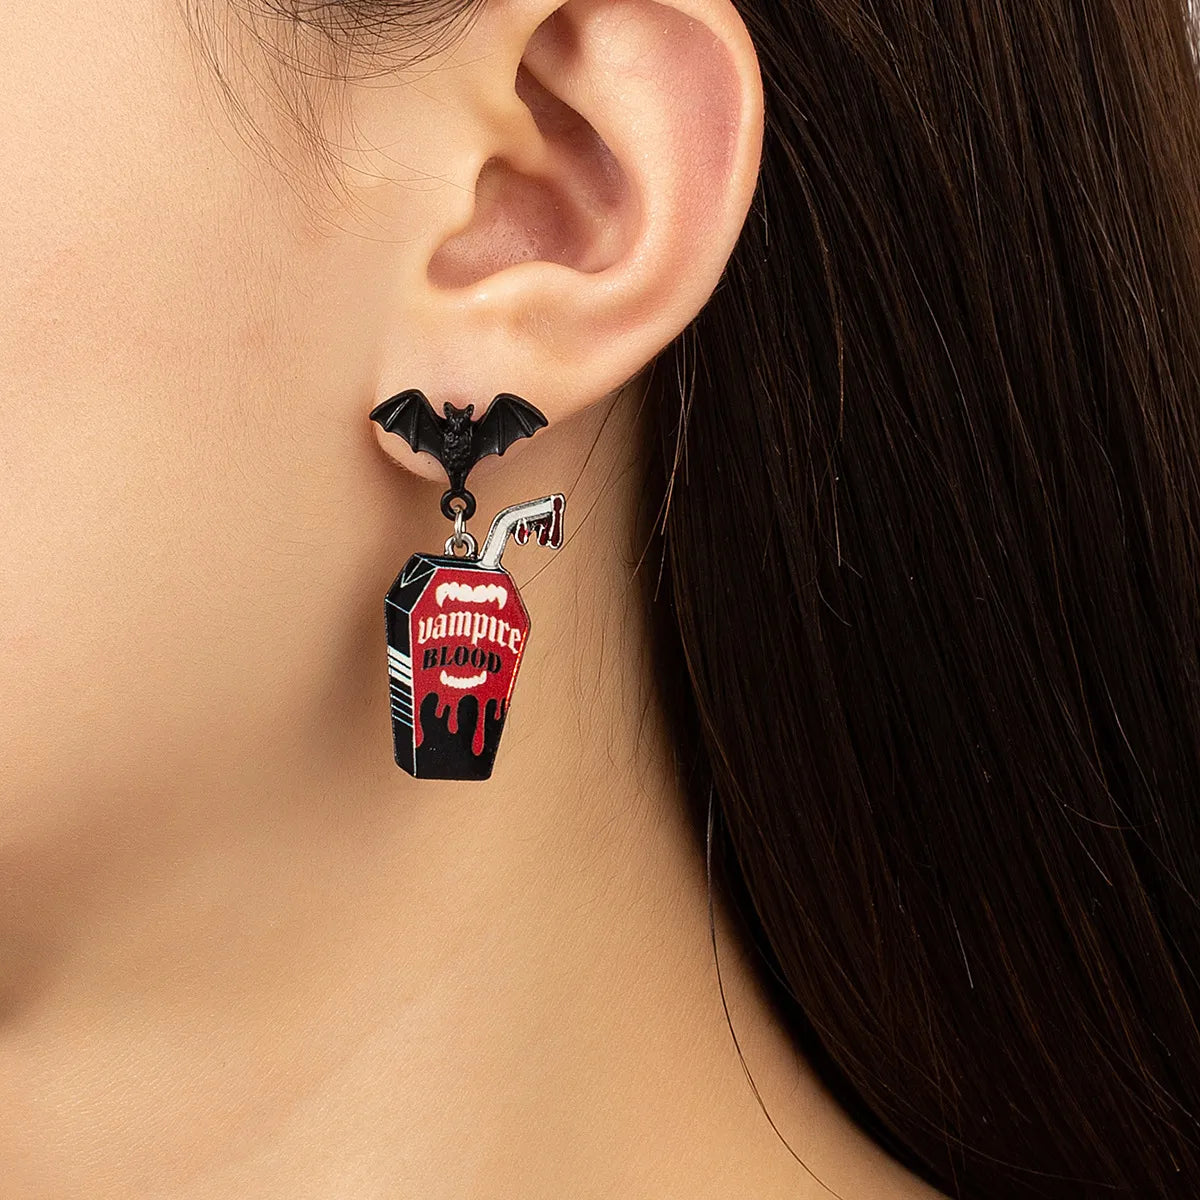 'Vampire Blood' Bat Themed Earrings